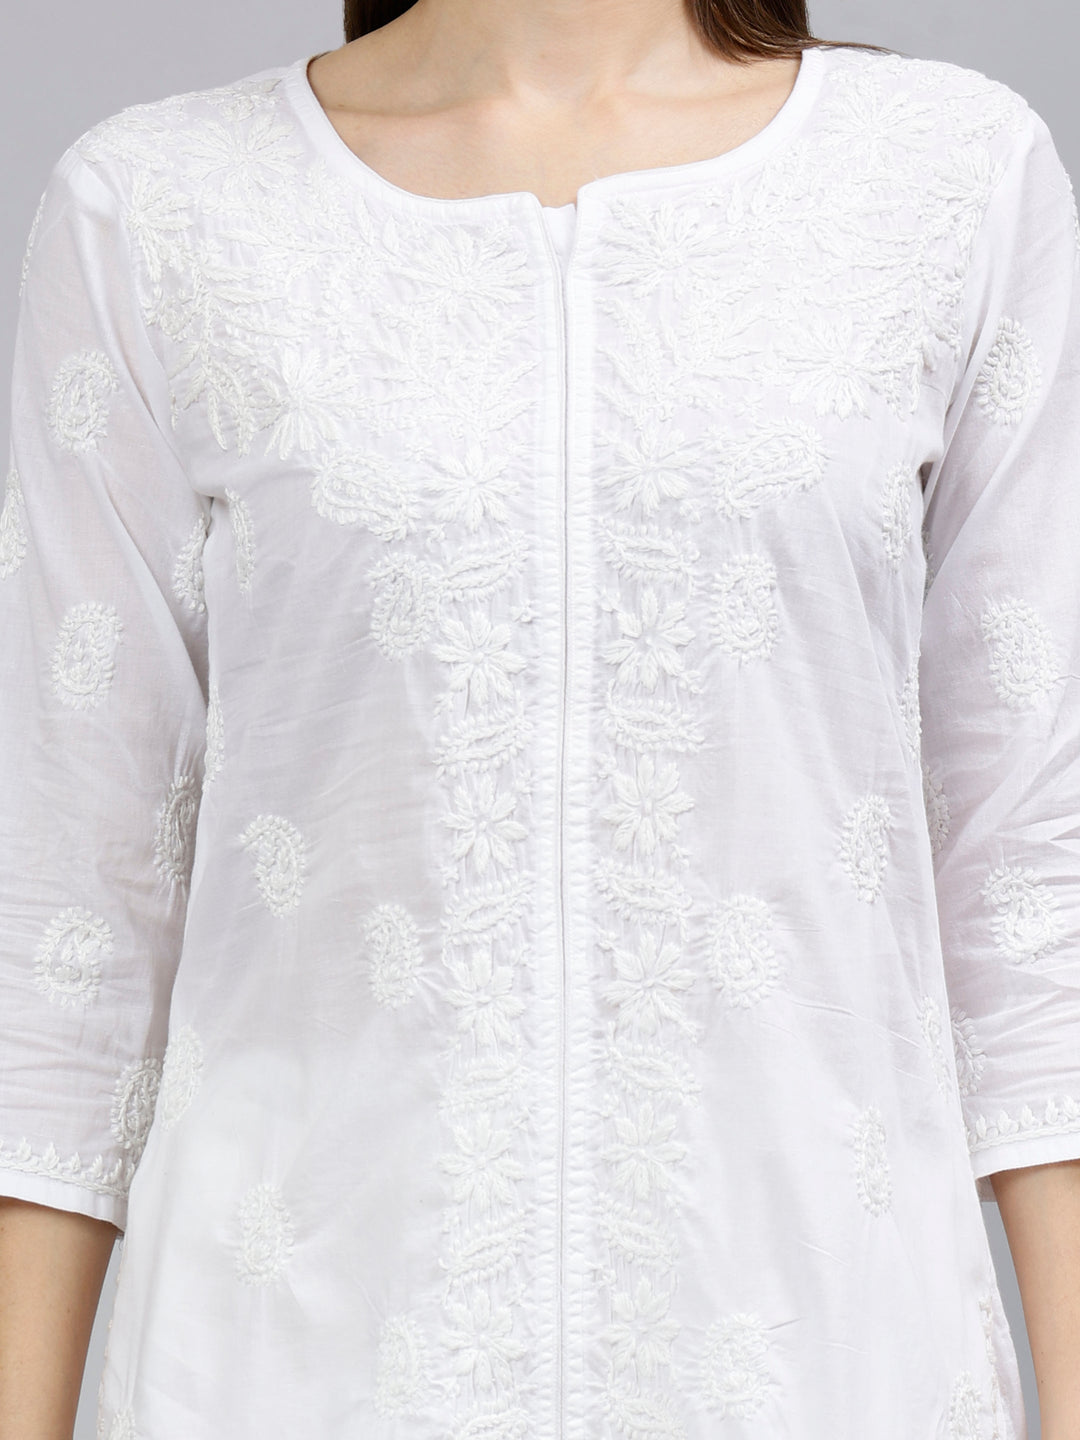 White-Cotton-Hand-Embroidered-Chikankari-Kurti